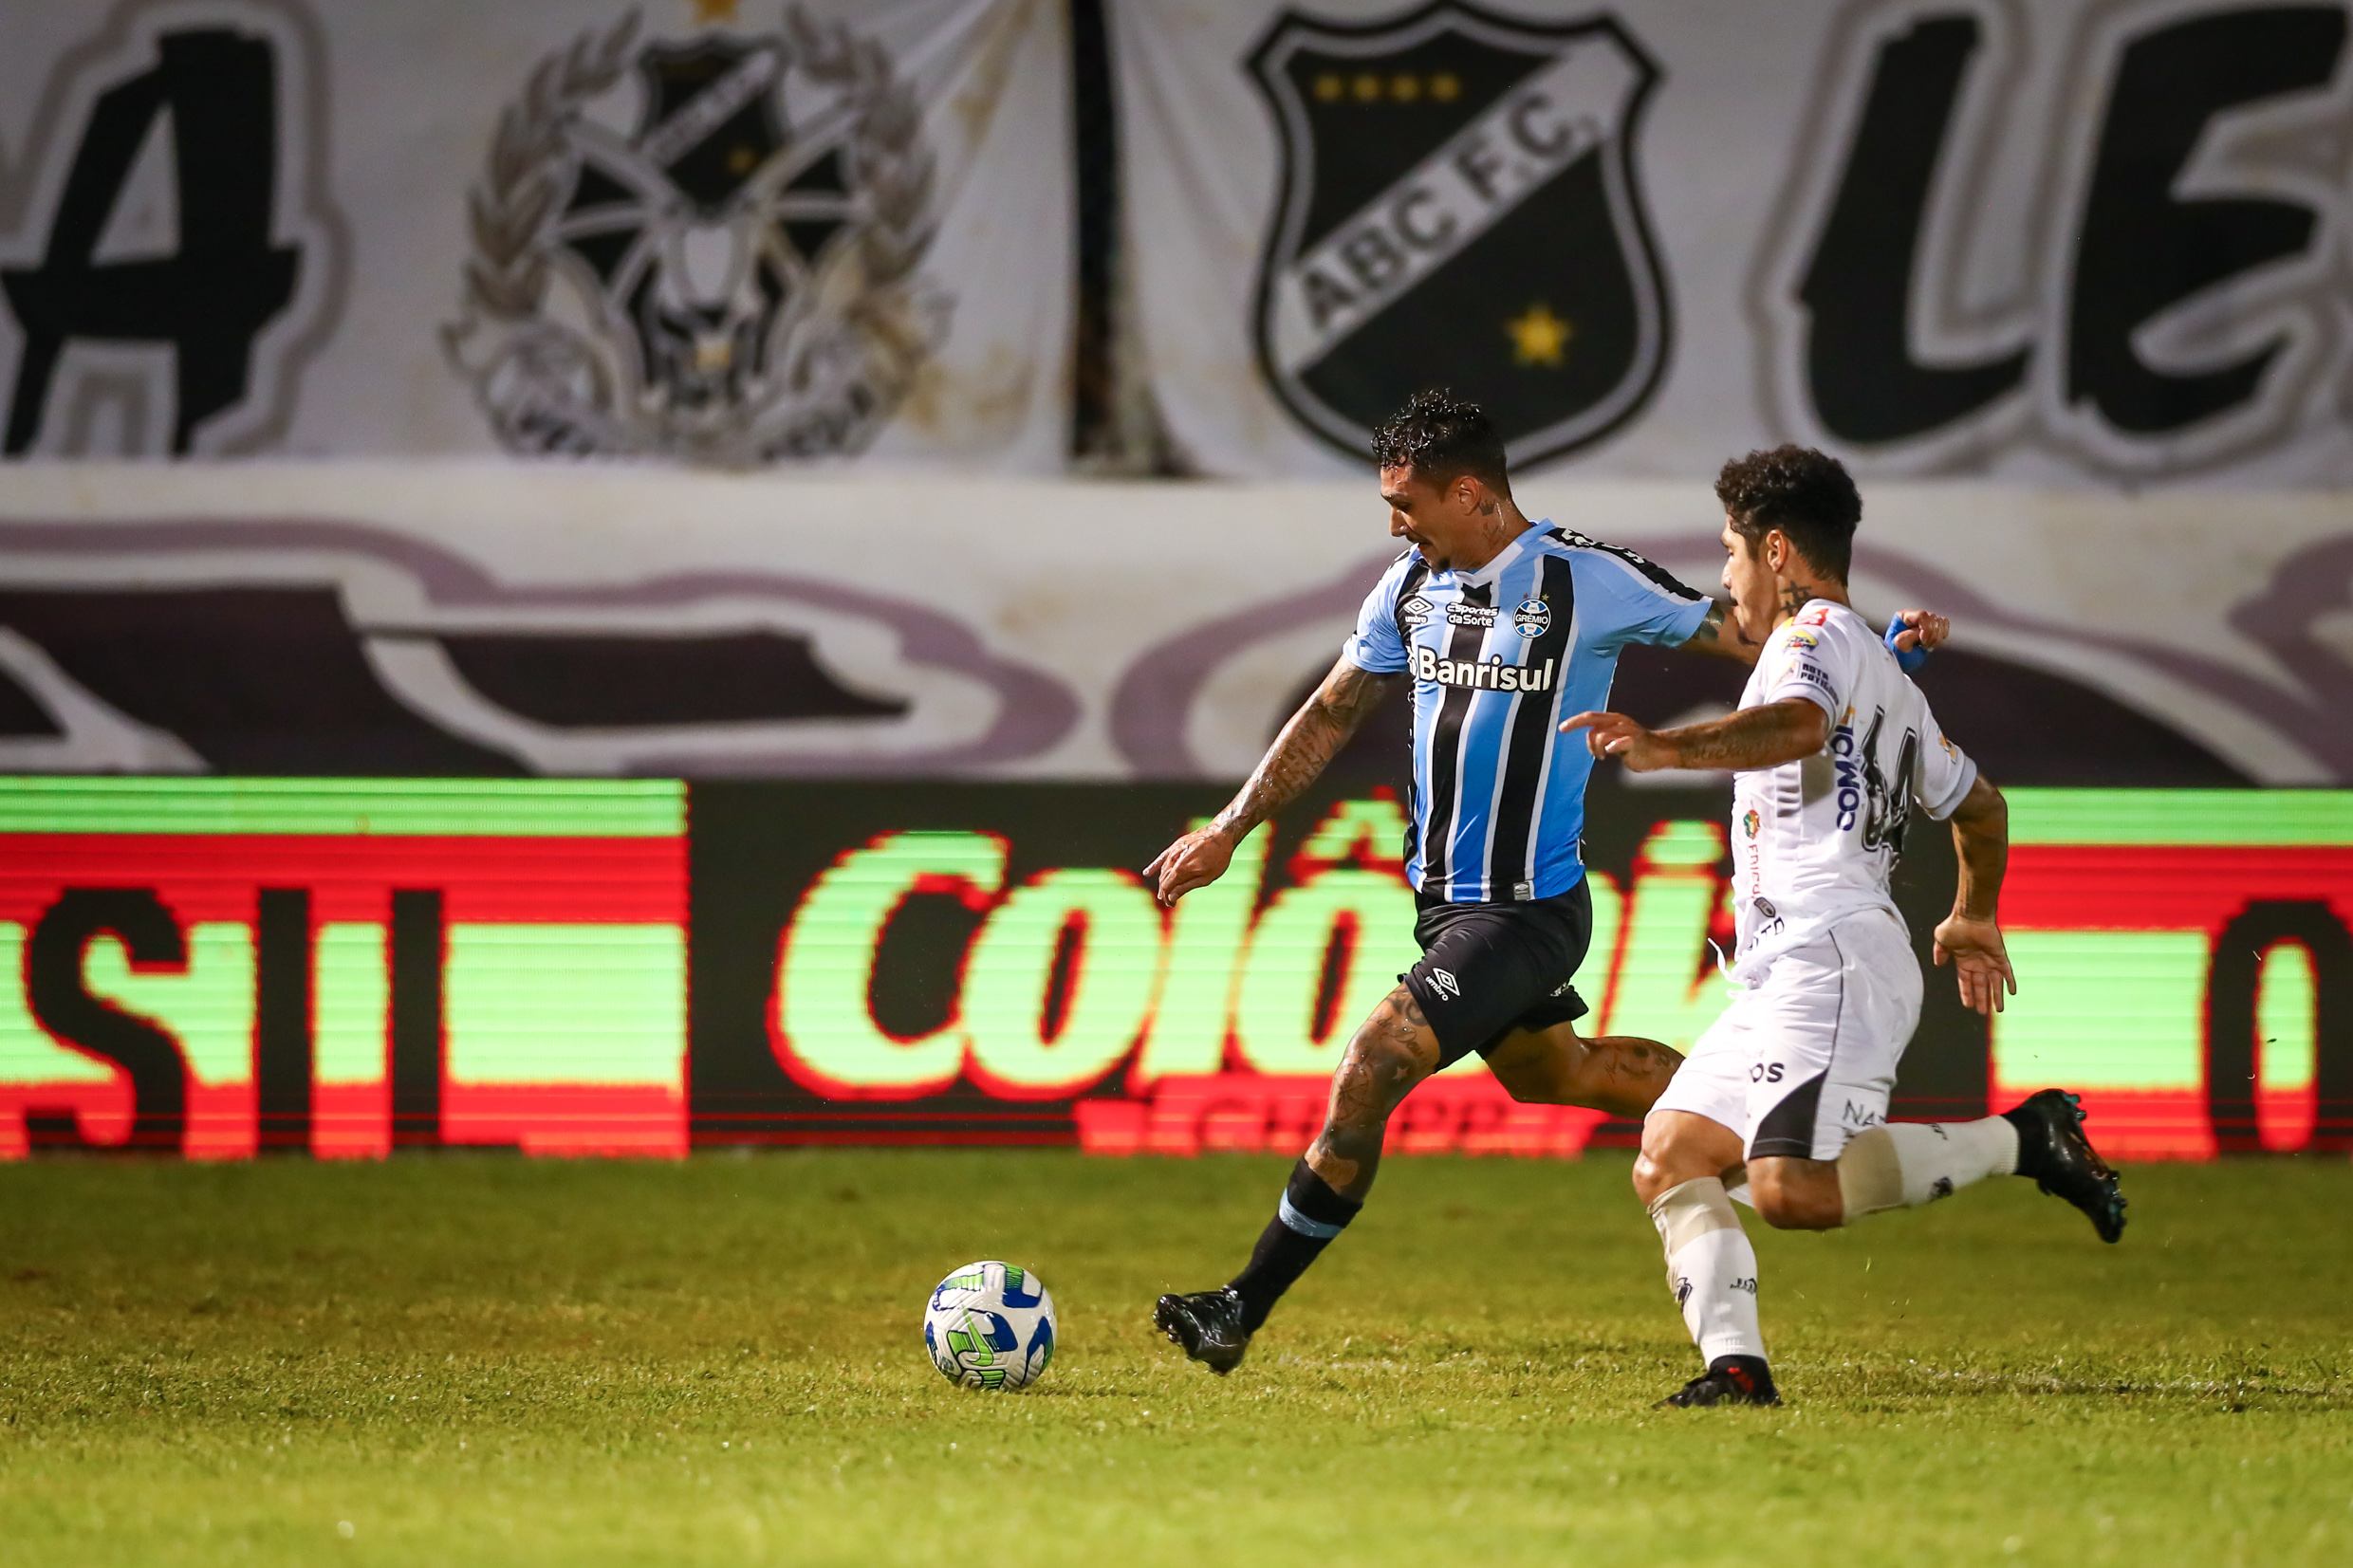 Grêmio vs ABC: A Clash of Titans